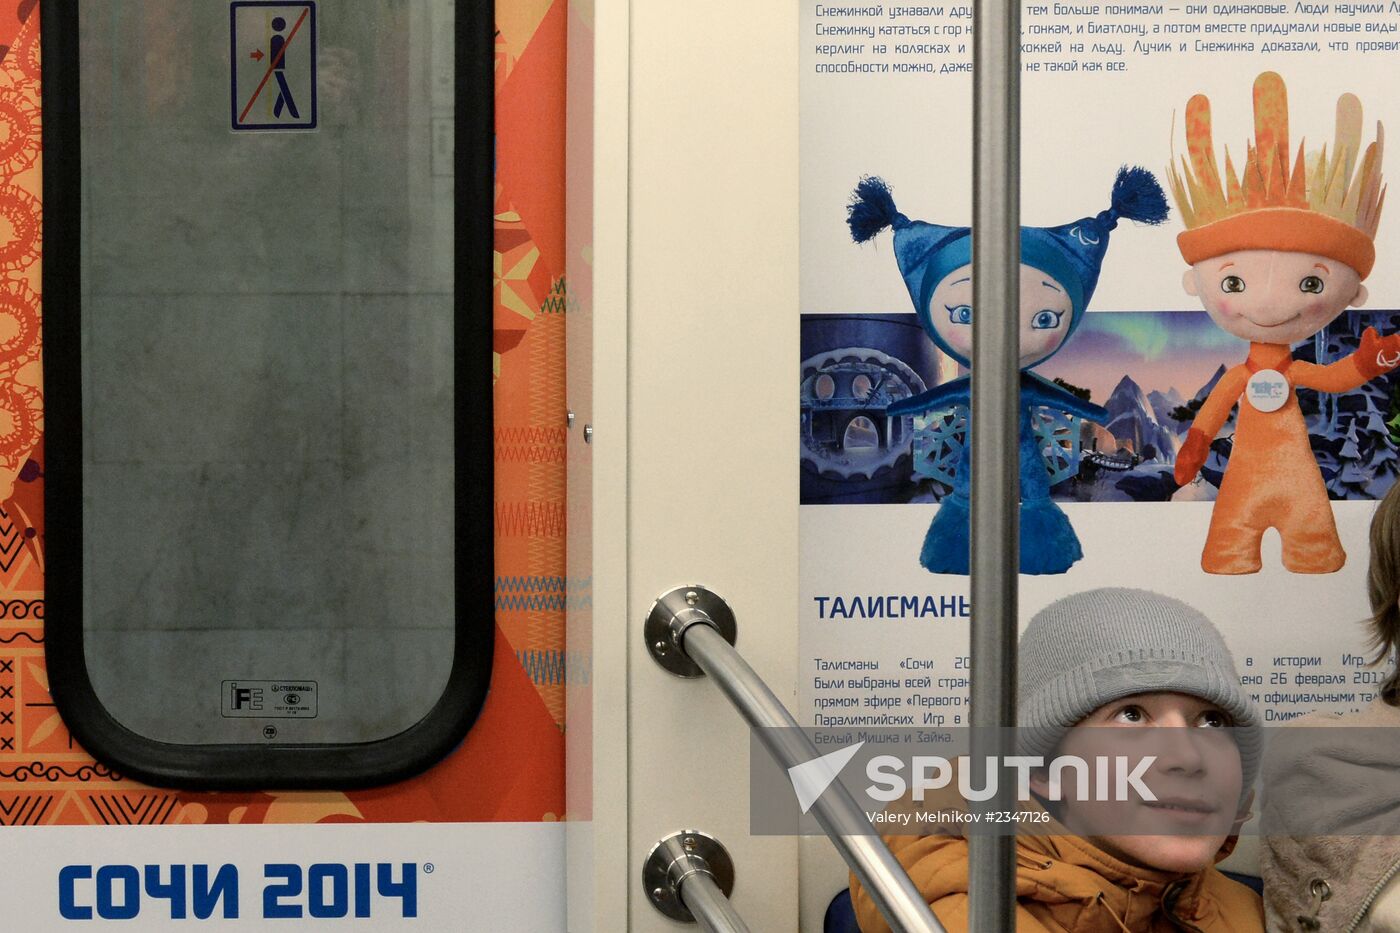 Train with Sochi 2014 logos